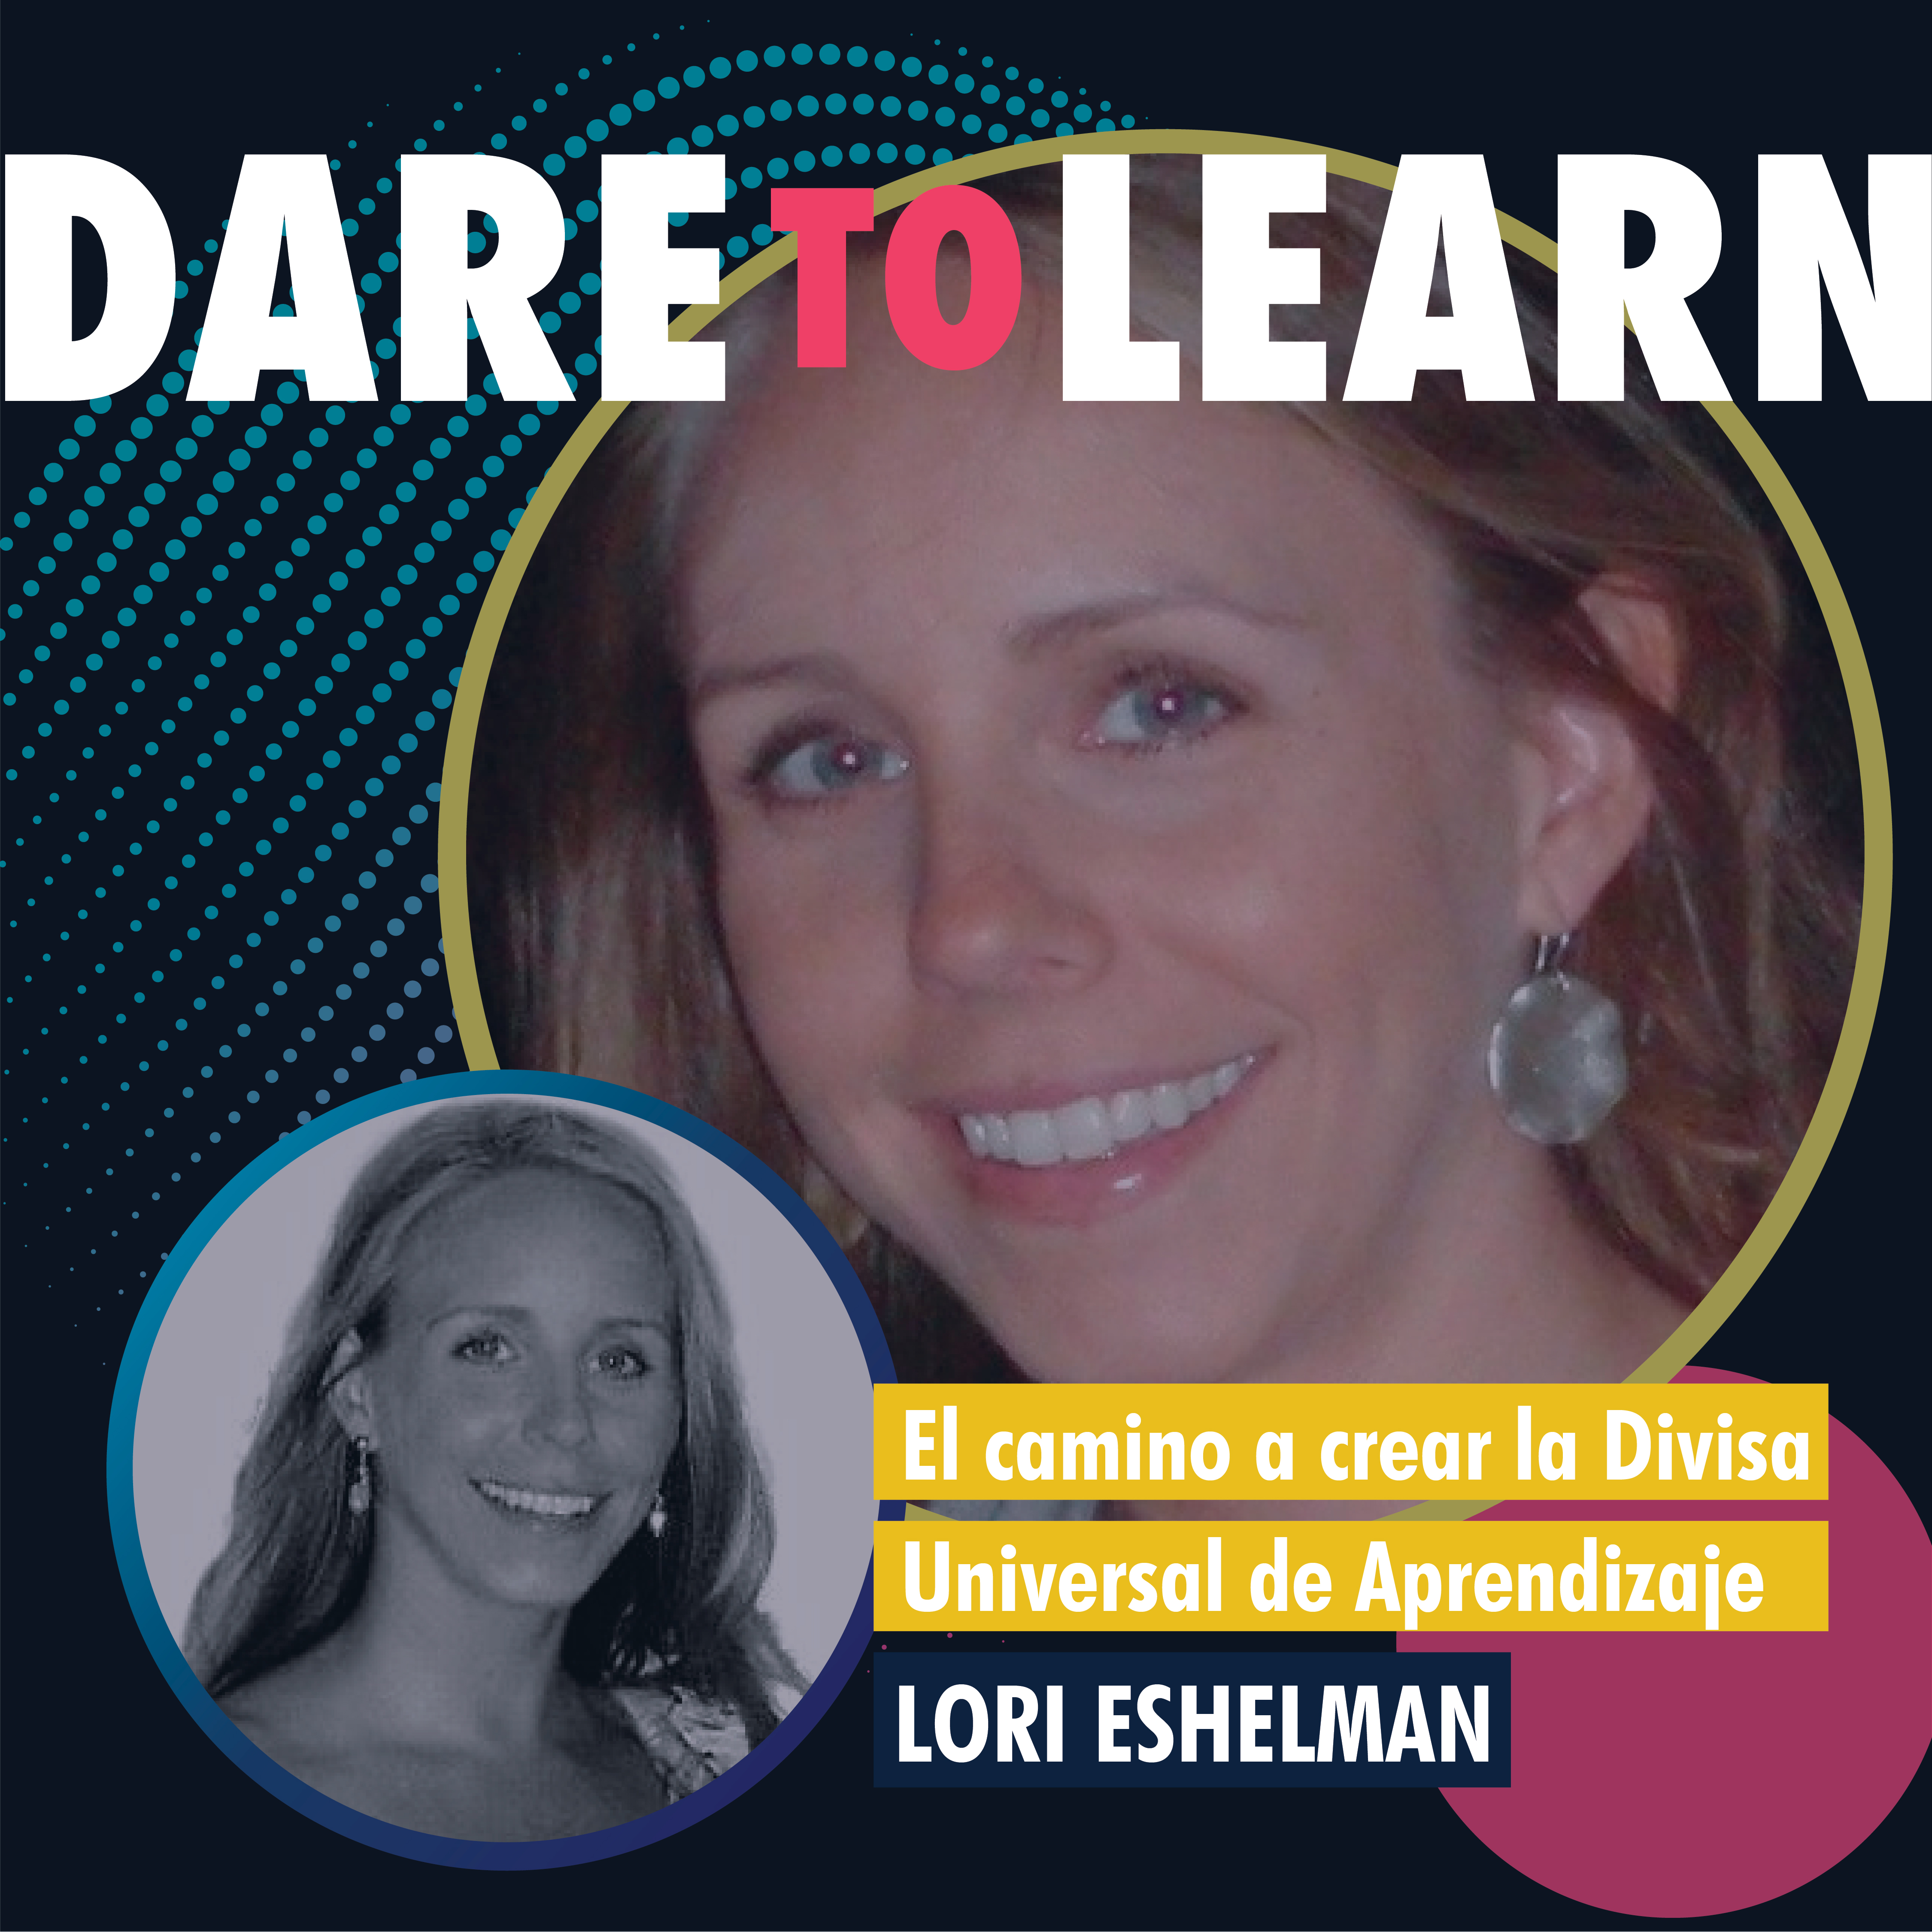 Lori Eshelman– El camino a crear la Divisa Universal del Aprendizaje.